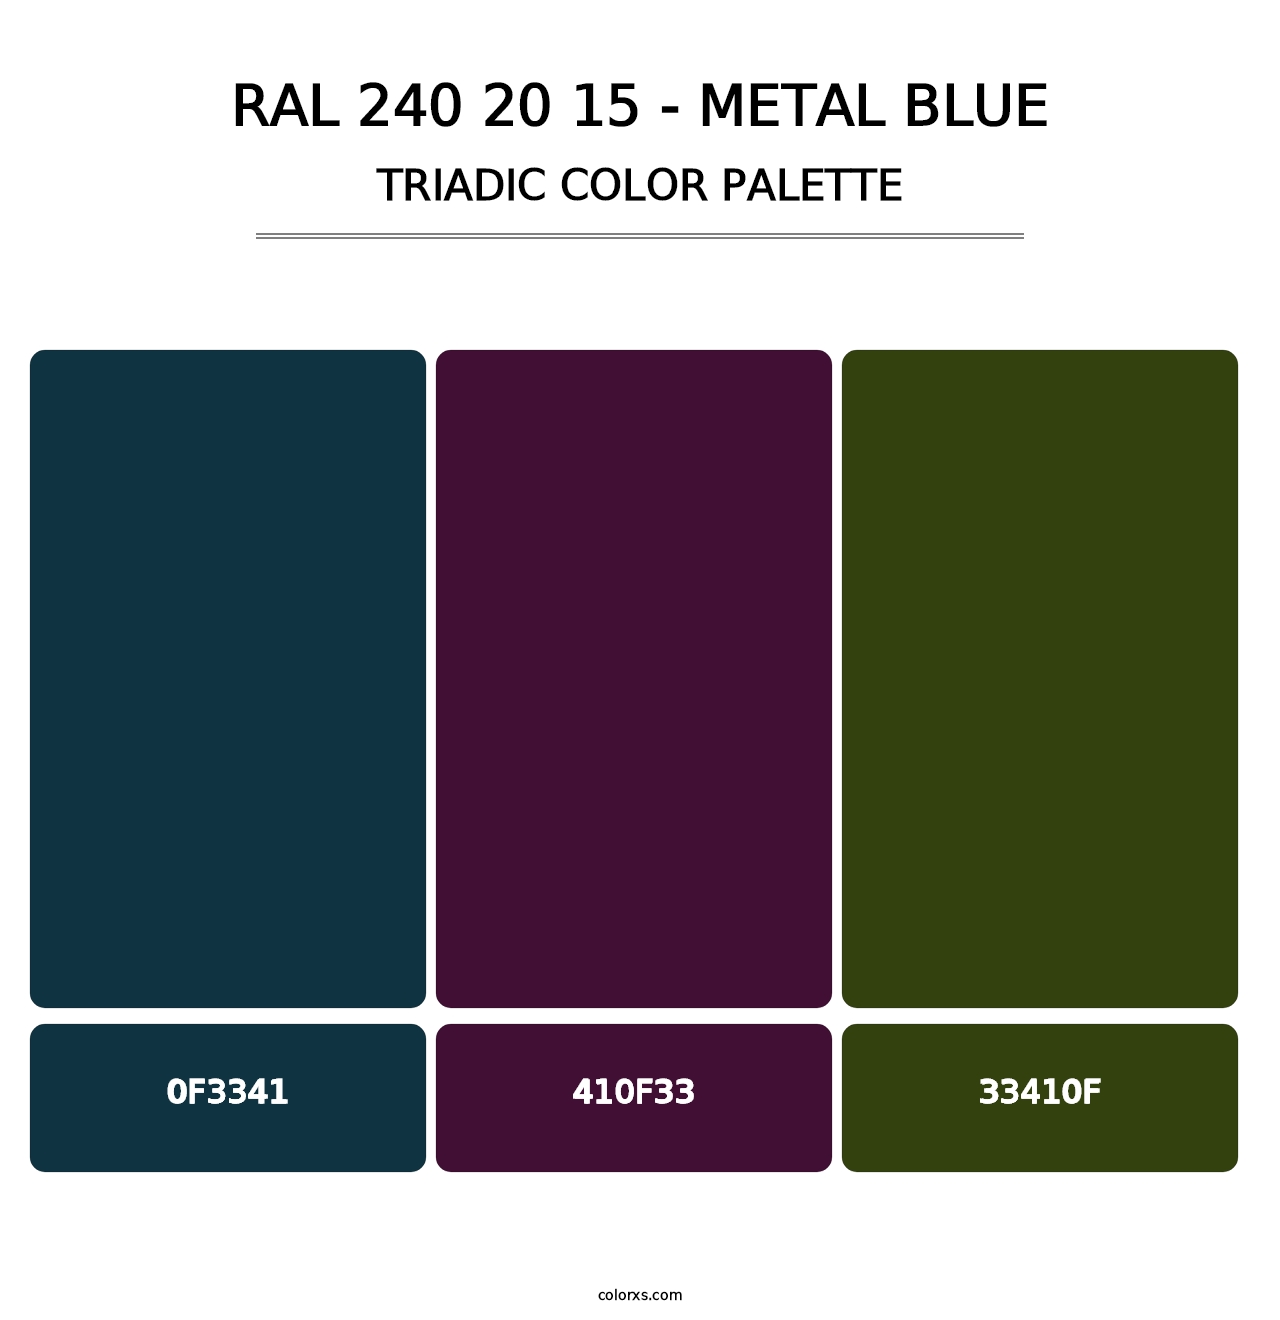 RAL 240 20 15 - Metal Blue - Triadic Color Palette